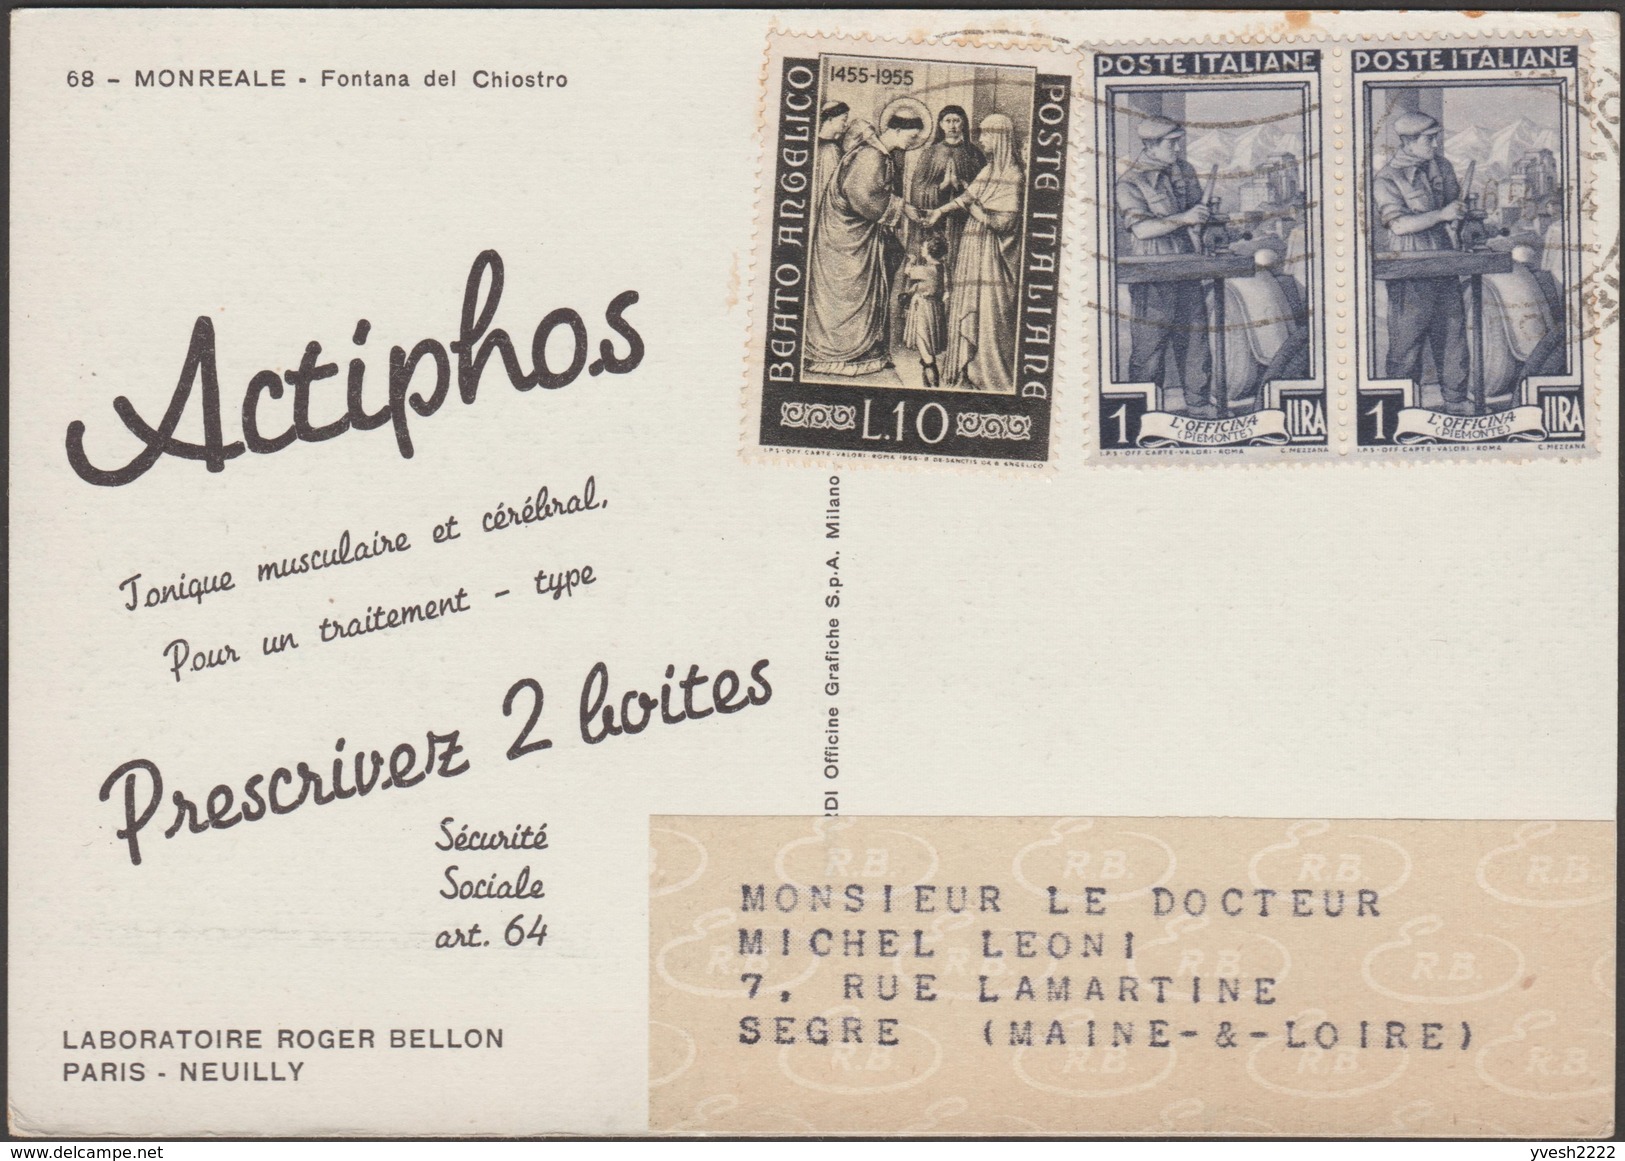 Italie 1955. Carte Publicitaire Du Laboratoire Roger Bellon. Actiphos, Tonique Musculaire Et Cérébral - Pharmacy